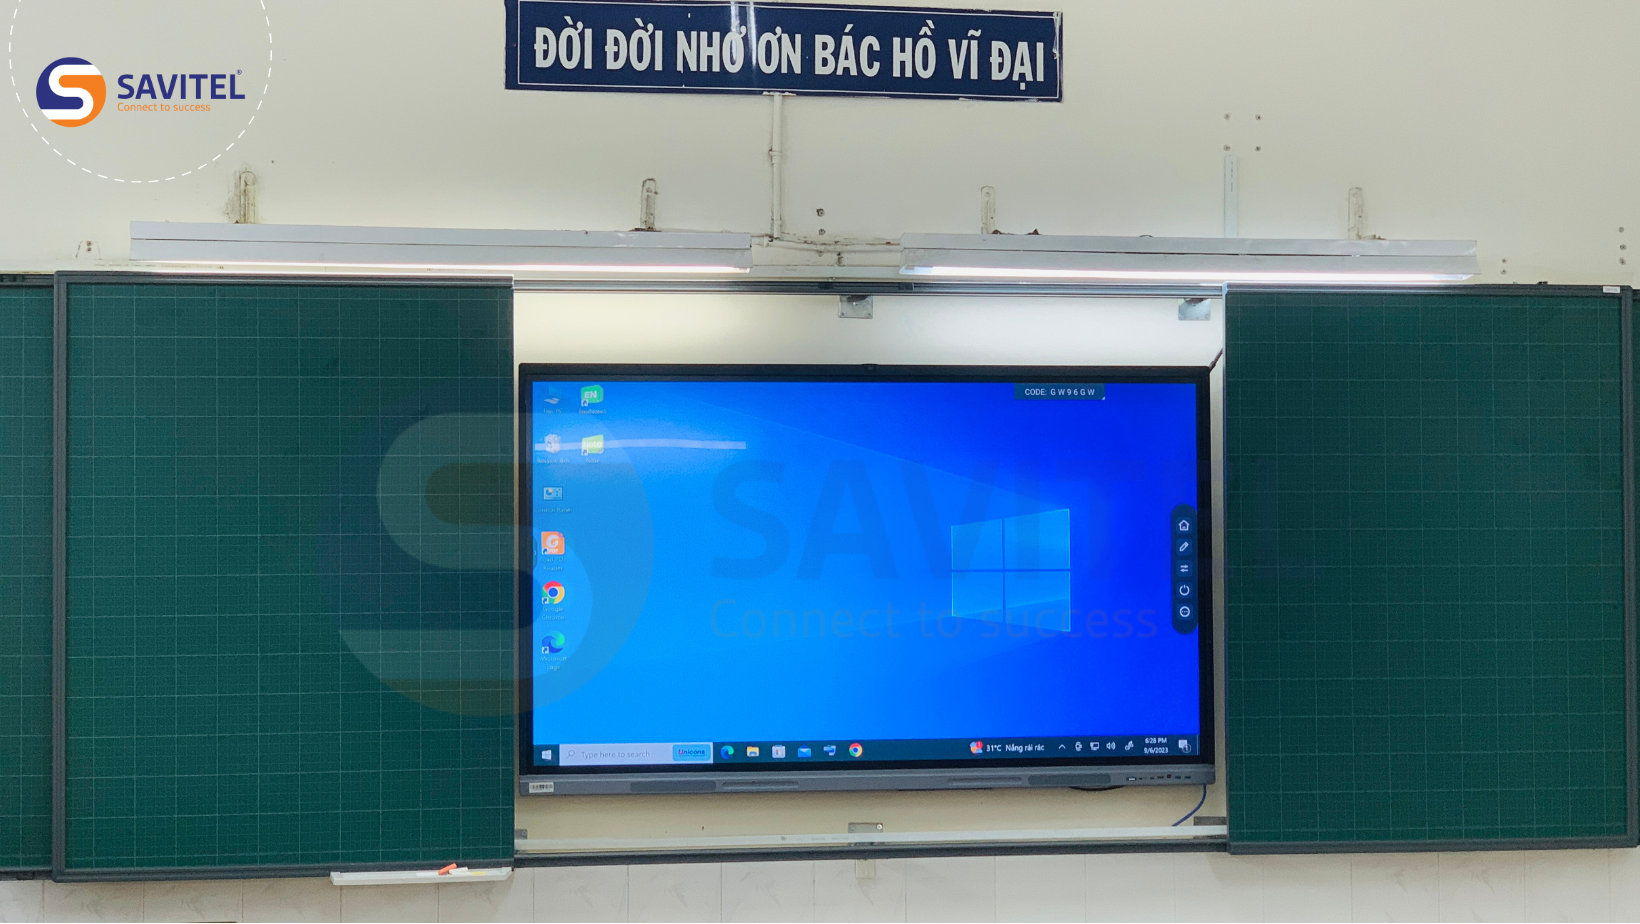 Vì sao nên ứng dụng màn hình tương tác AVASDI cho lớp học? 2